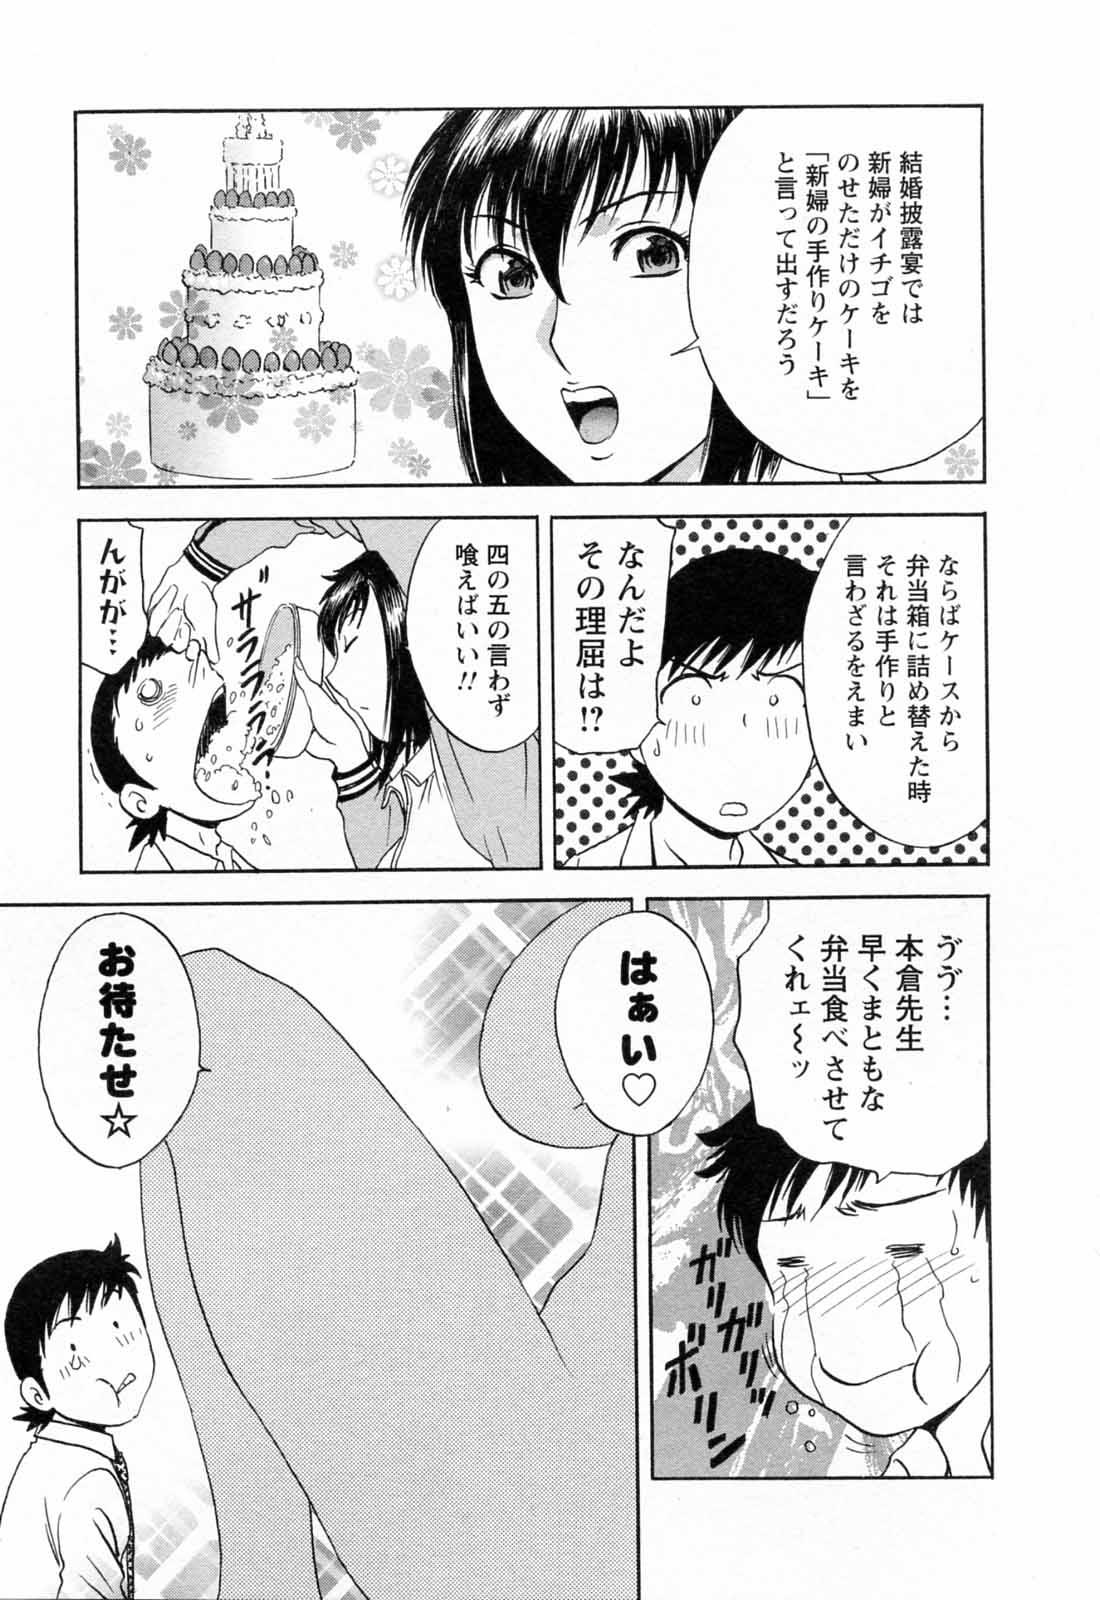 [Hidemaru] Mo-Retsu! Boin Sensei (Boing Boing Teacher) Vol.5 80